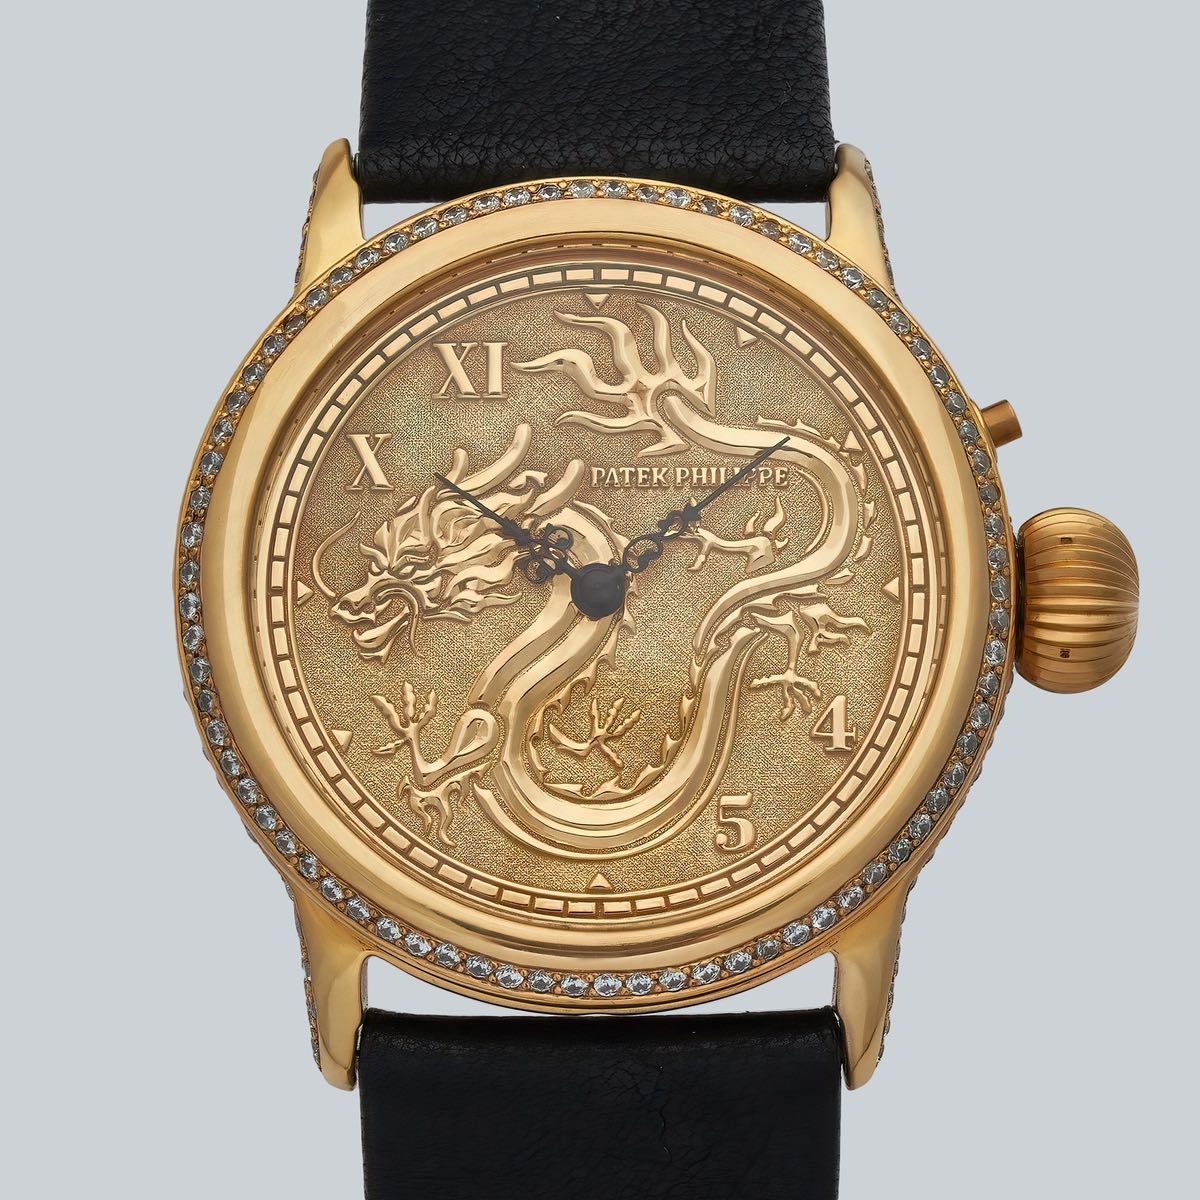 アンティーク/ヴィンテージ Patek Philippe 懐中時計を アレンジした40mmシルバーダイヤルレザーバンドの腕時計 